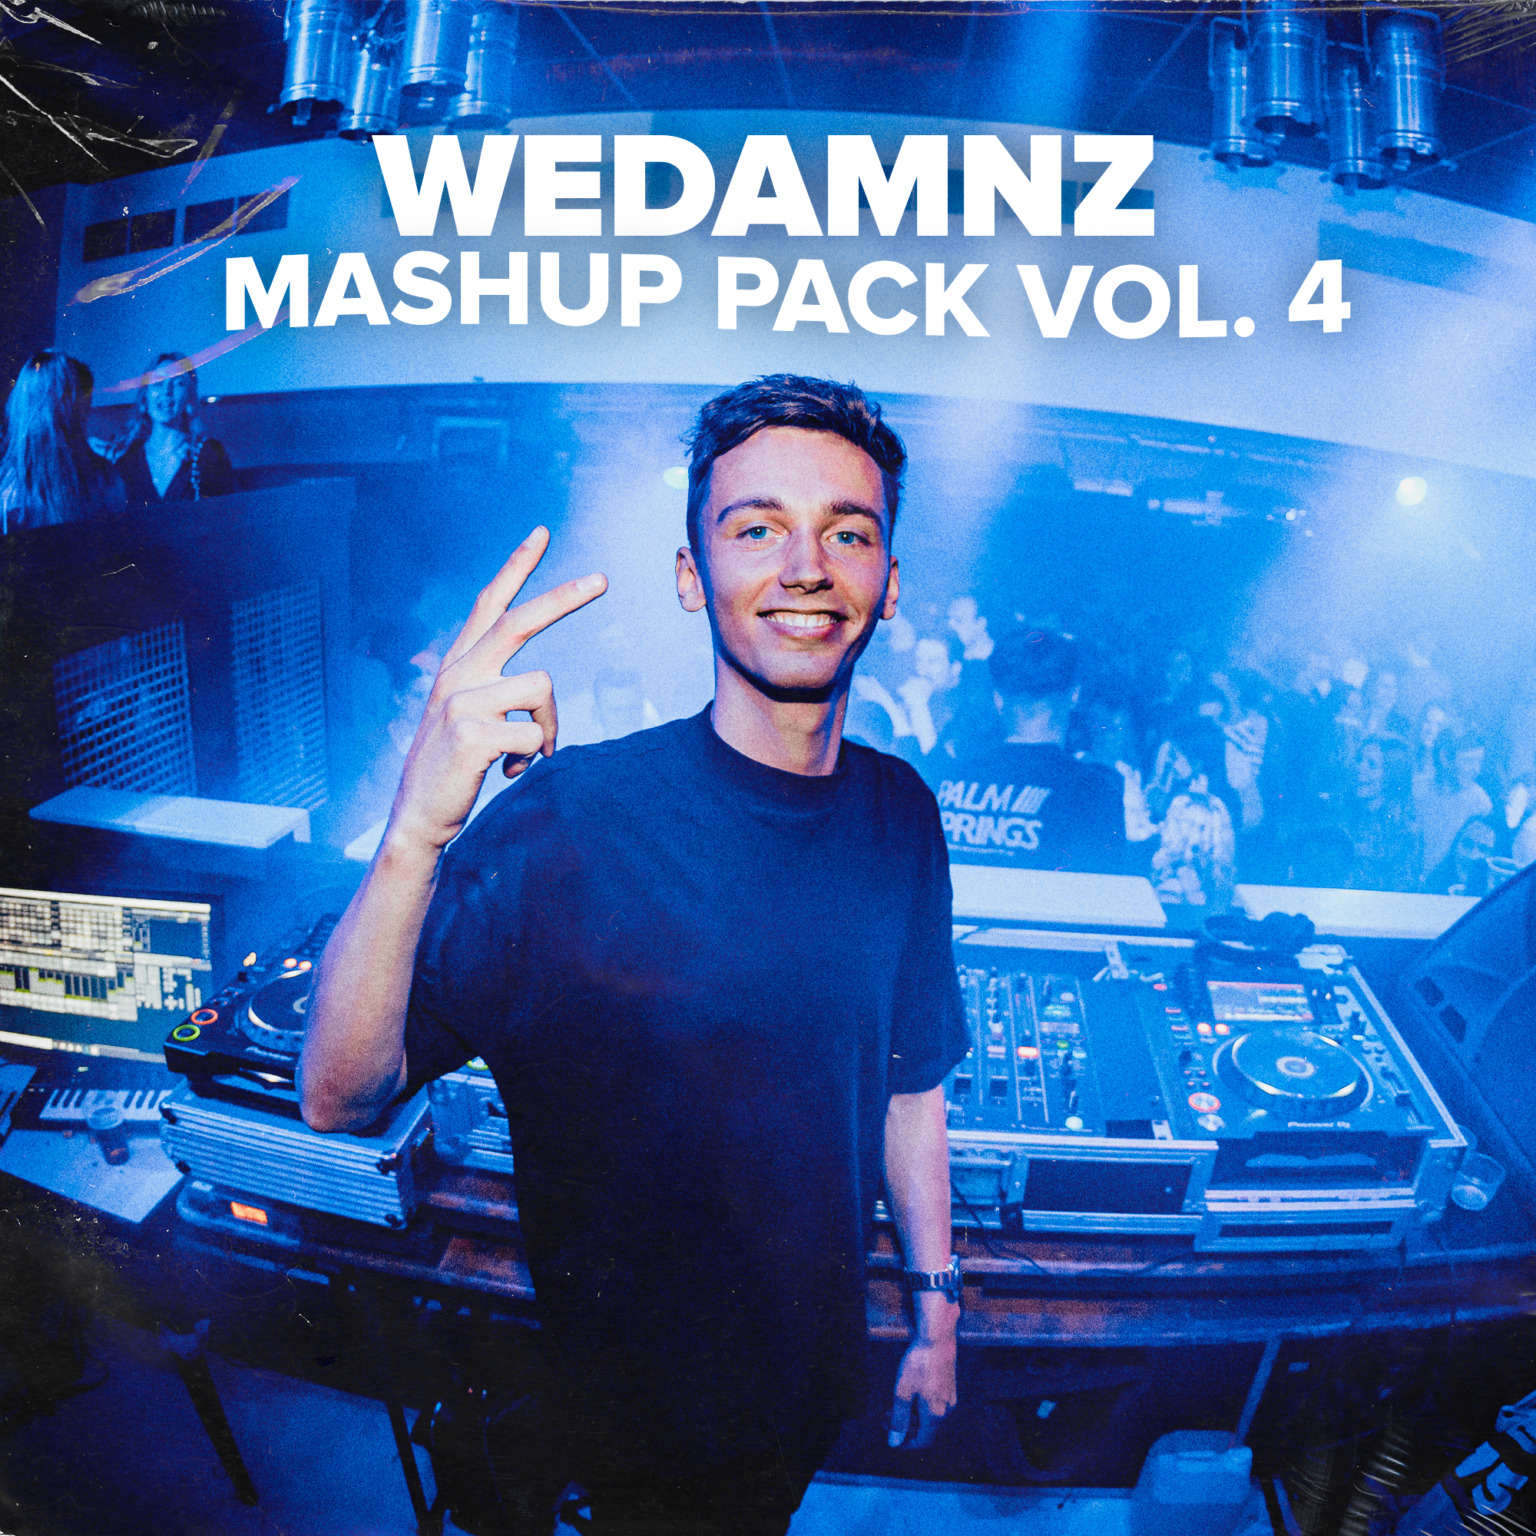 WeDamnz Mashup Pack Volume 4